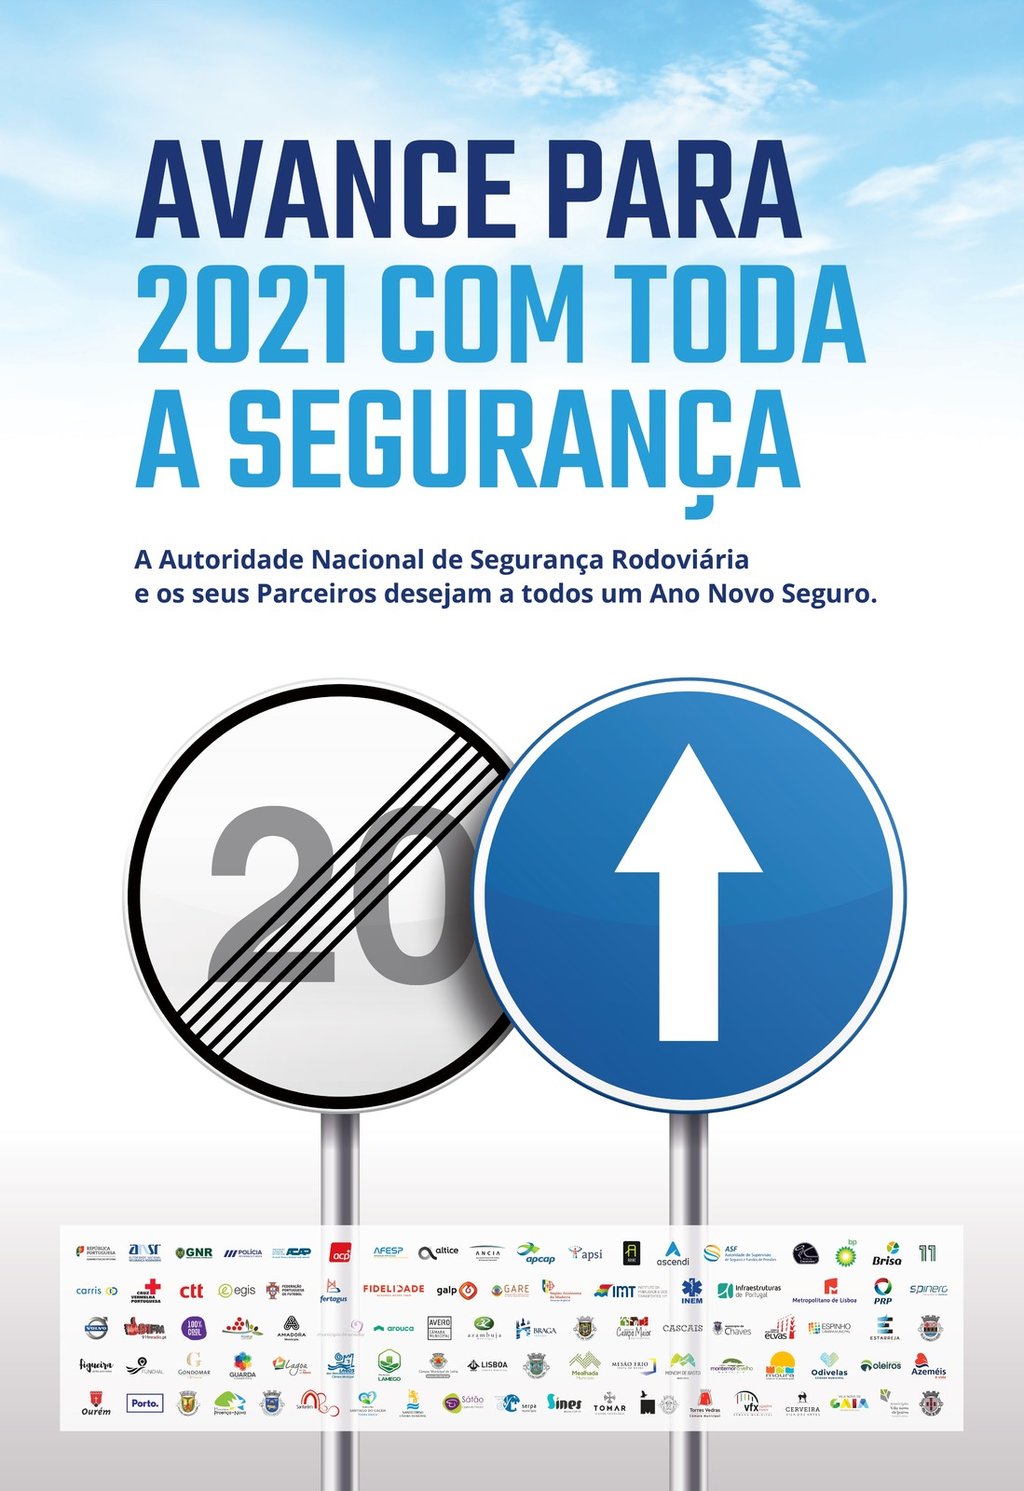 «AVANCE PARA 2021 COM TODA A SEGURANÇA»